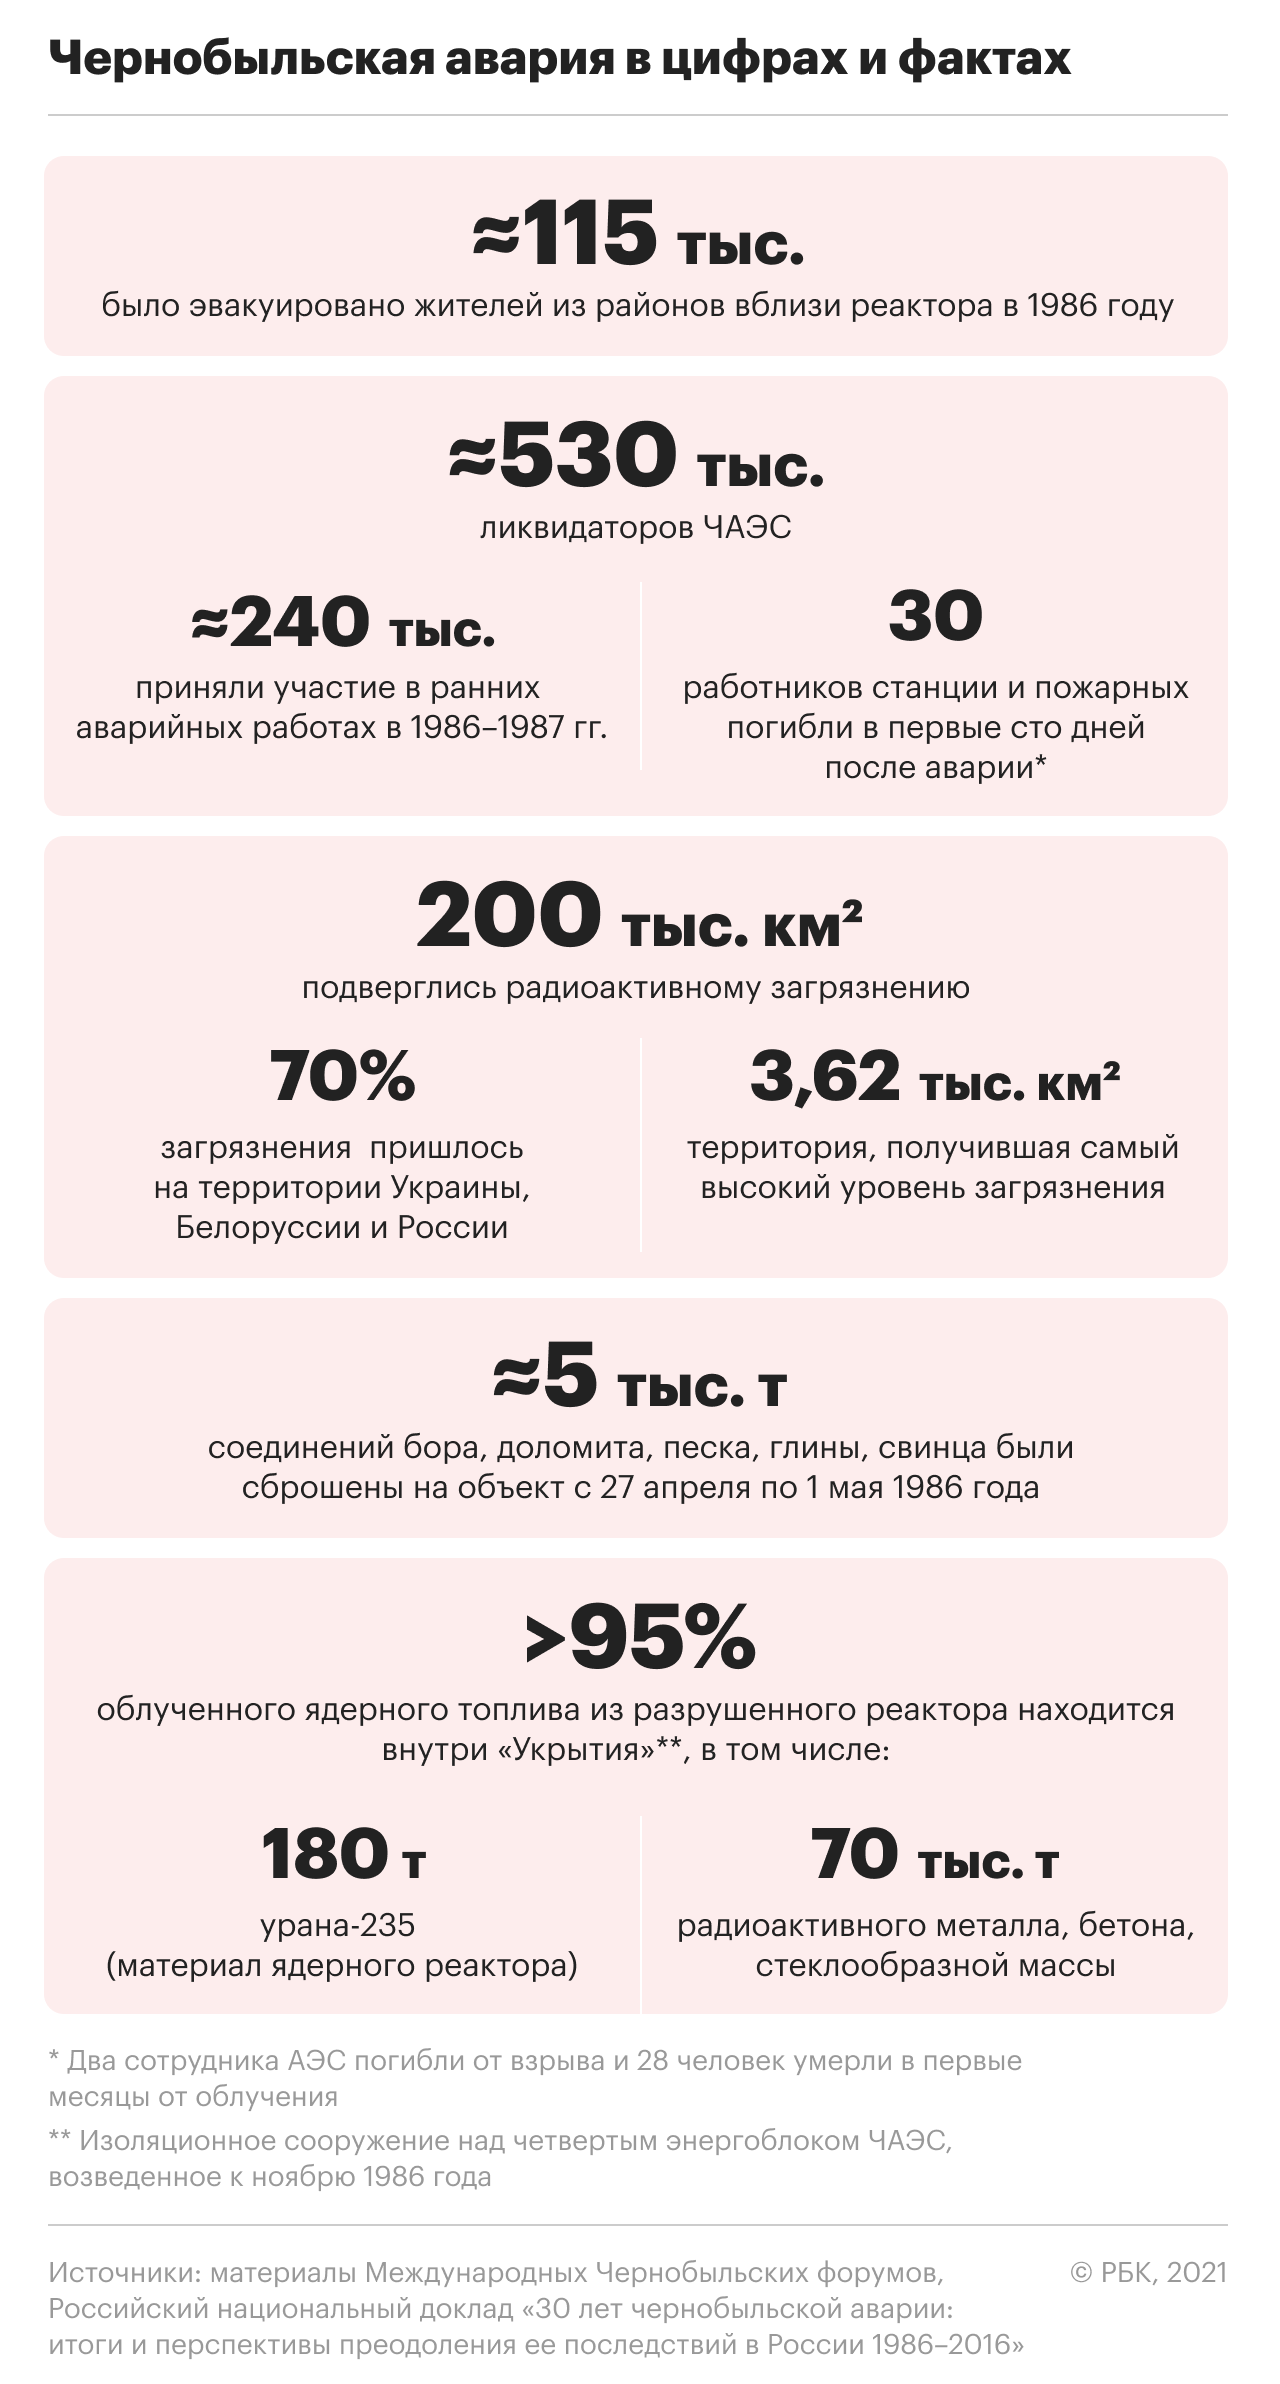 Факты о Чернобыльской аварии. Инфографика